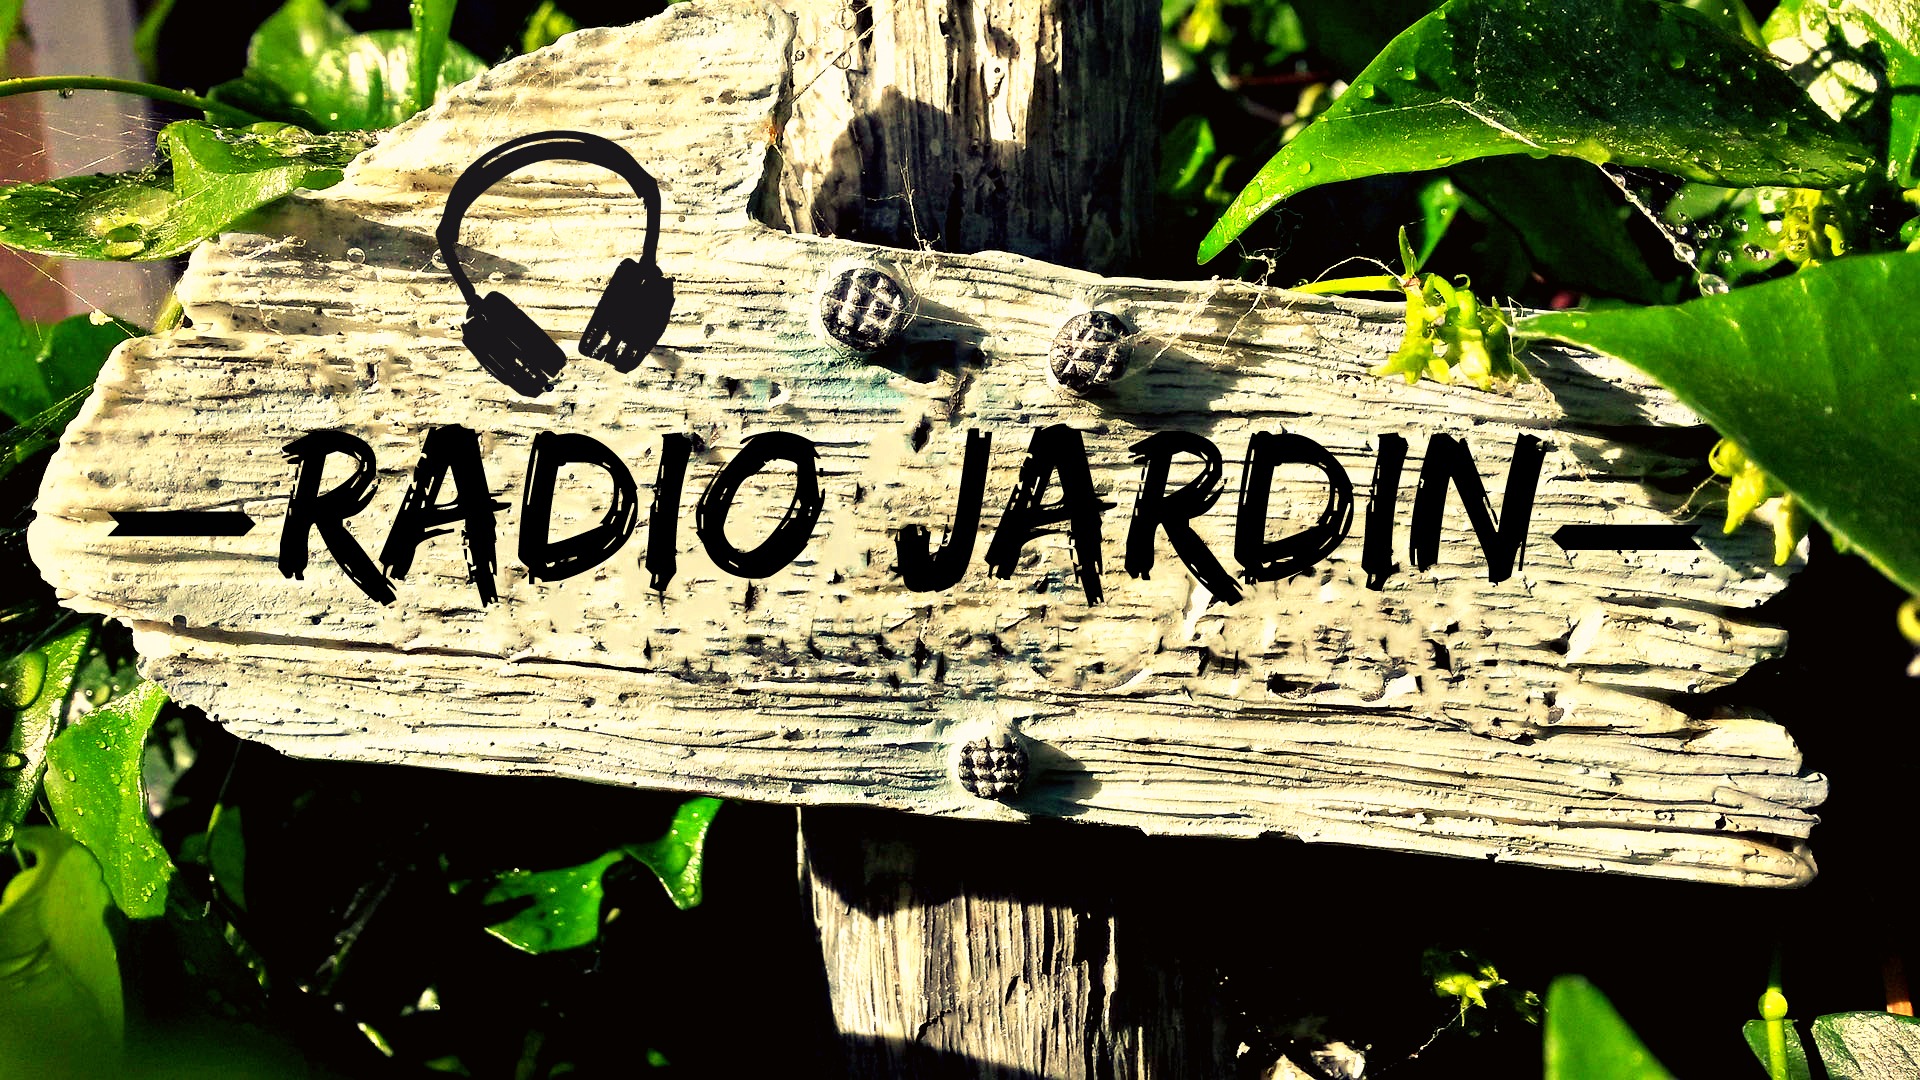 Radio Jardin du 23 Août 2016